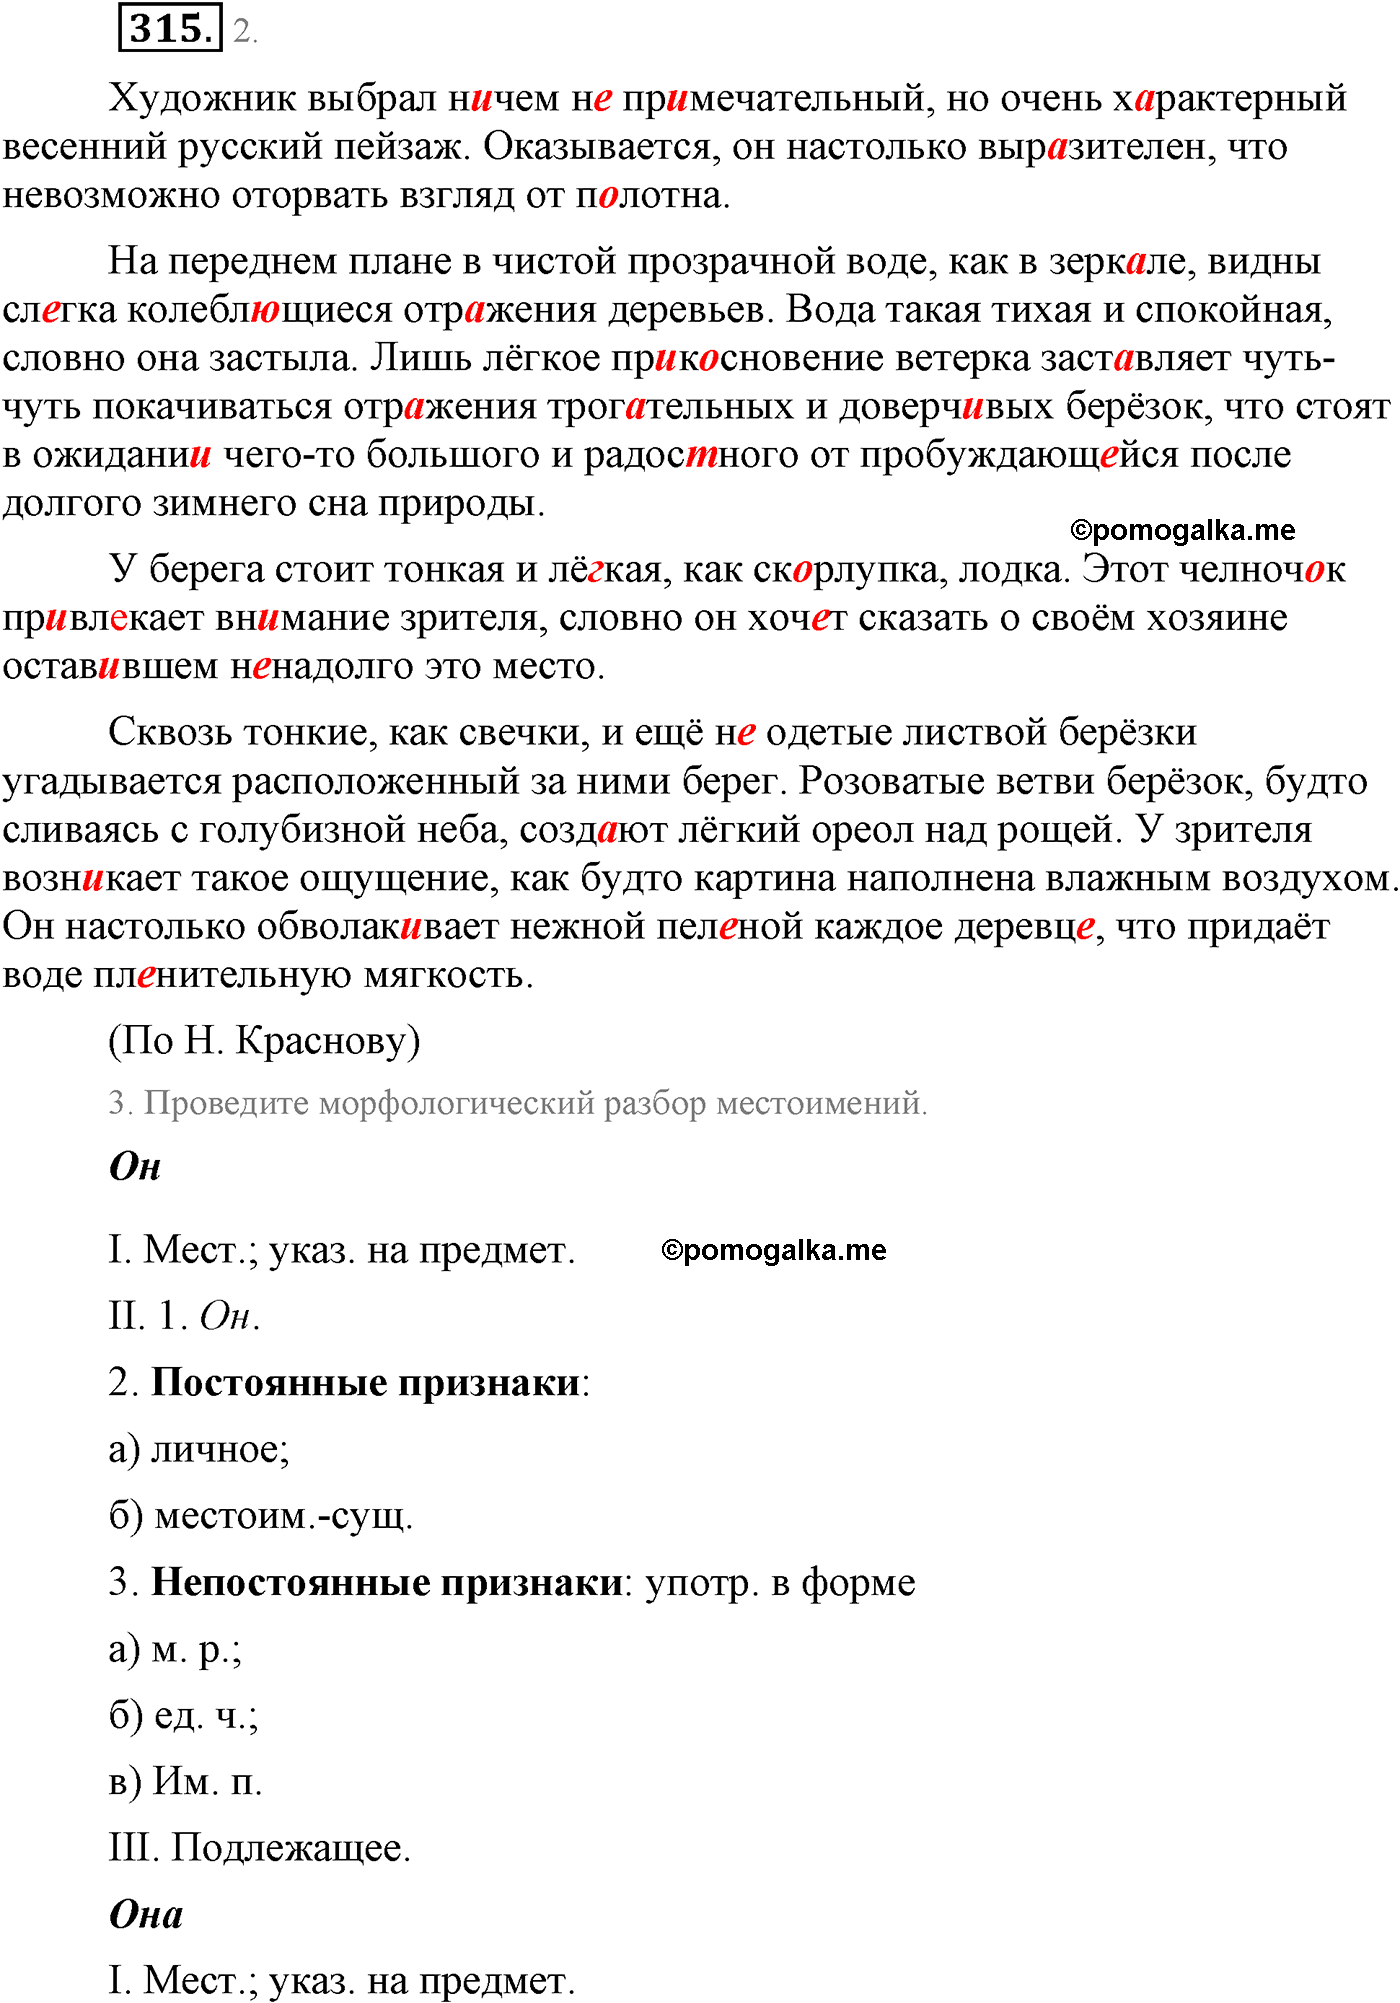 упражнение №315 русский язык 9 класс Львова